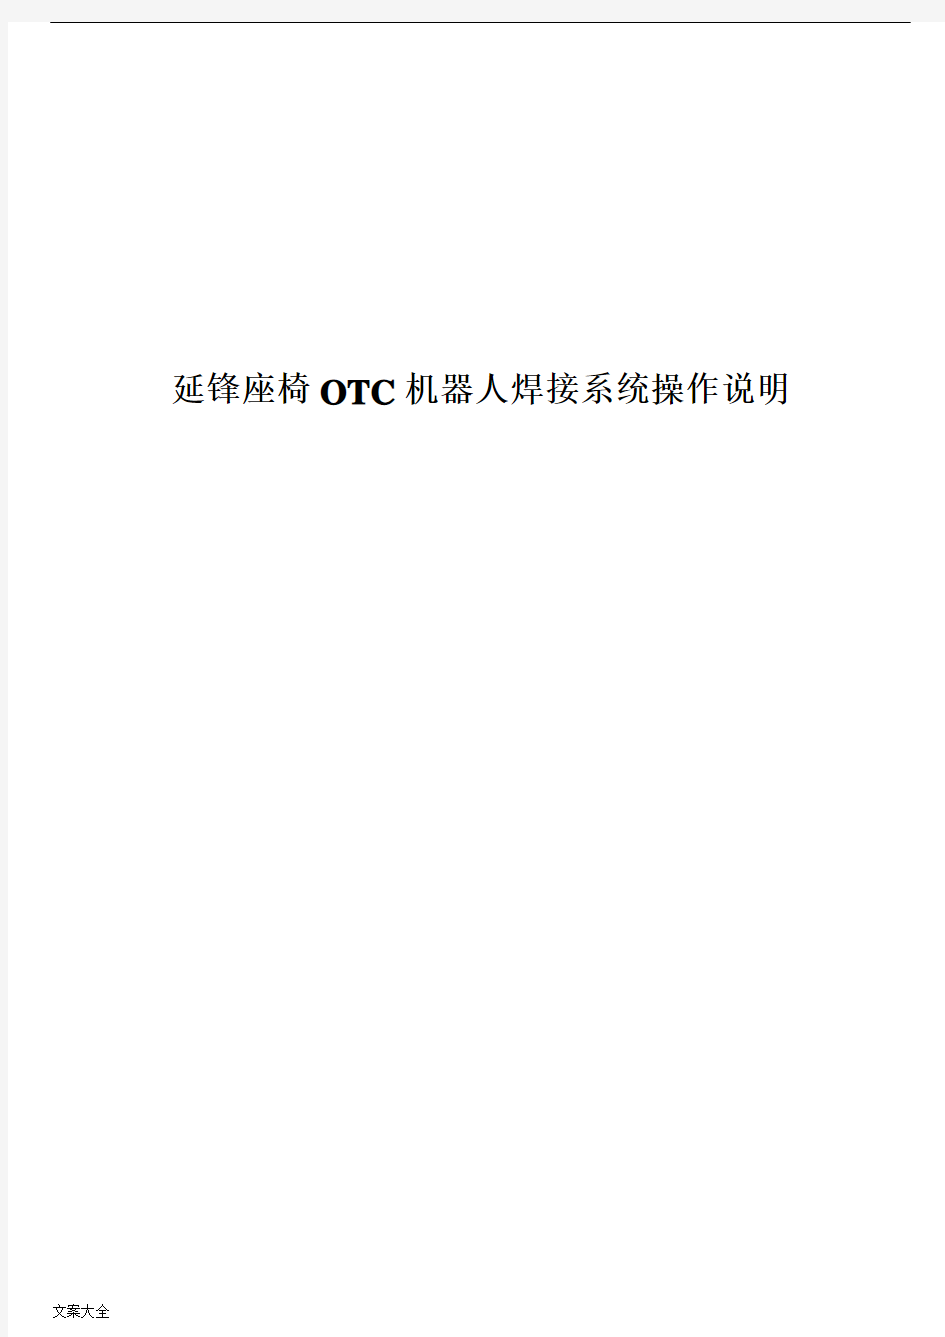 OTC机器人焊接系统操作说明书